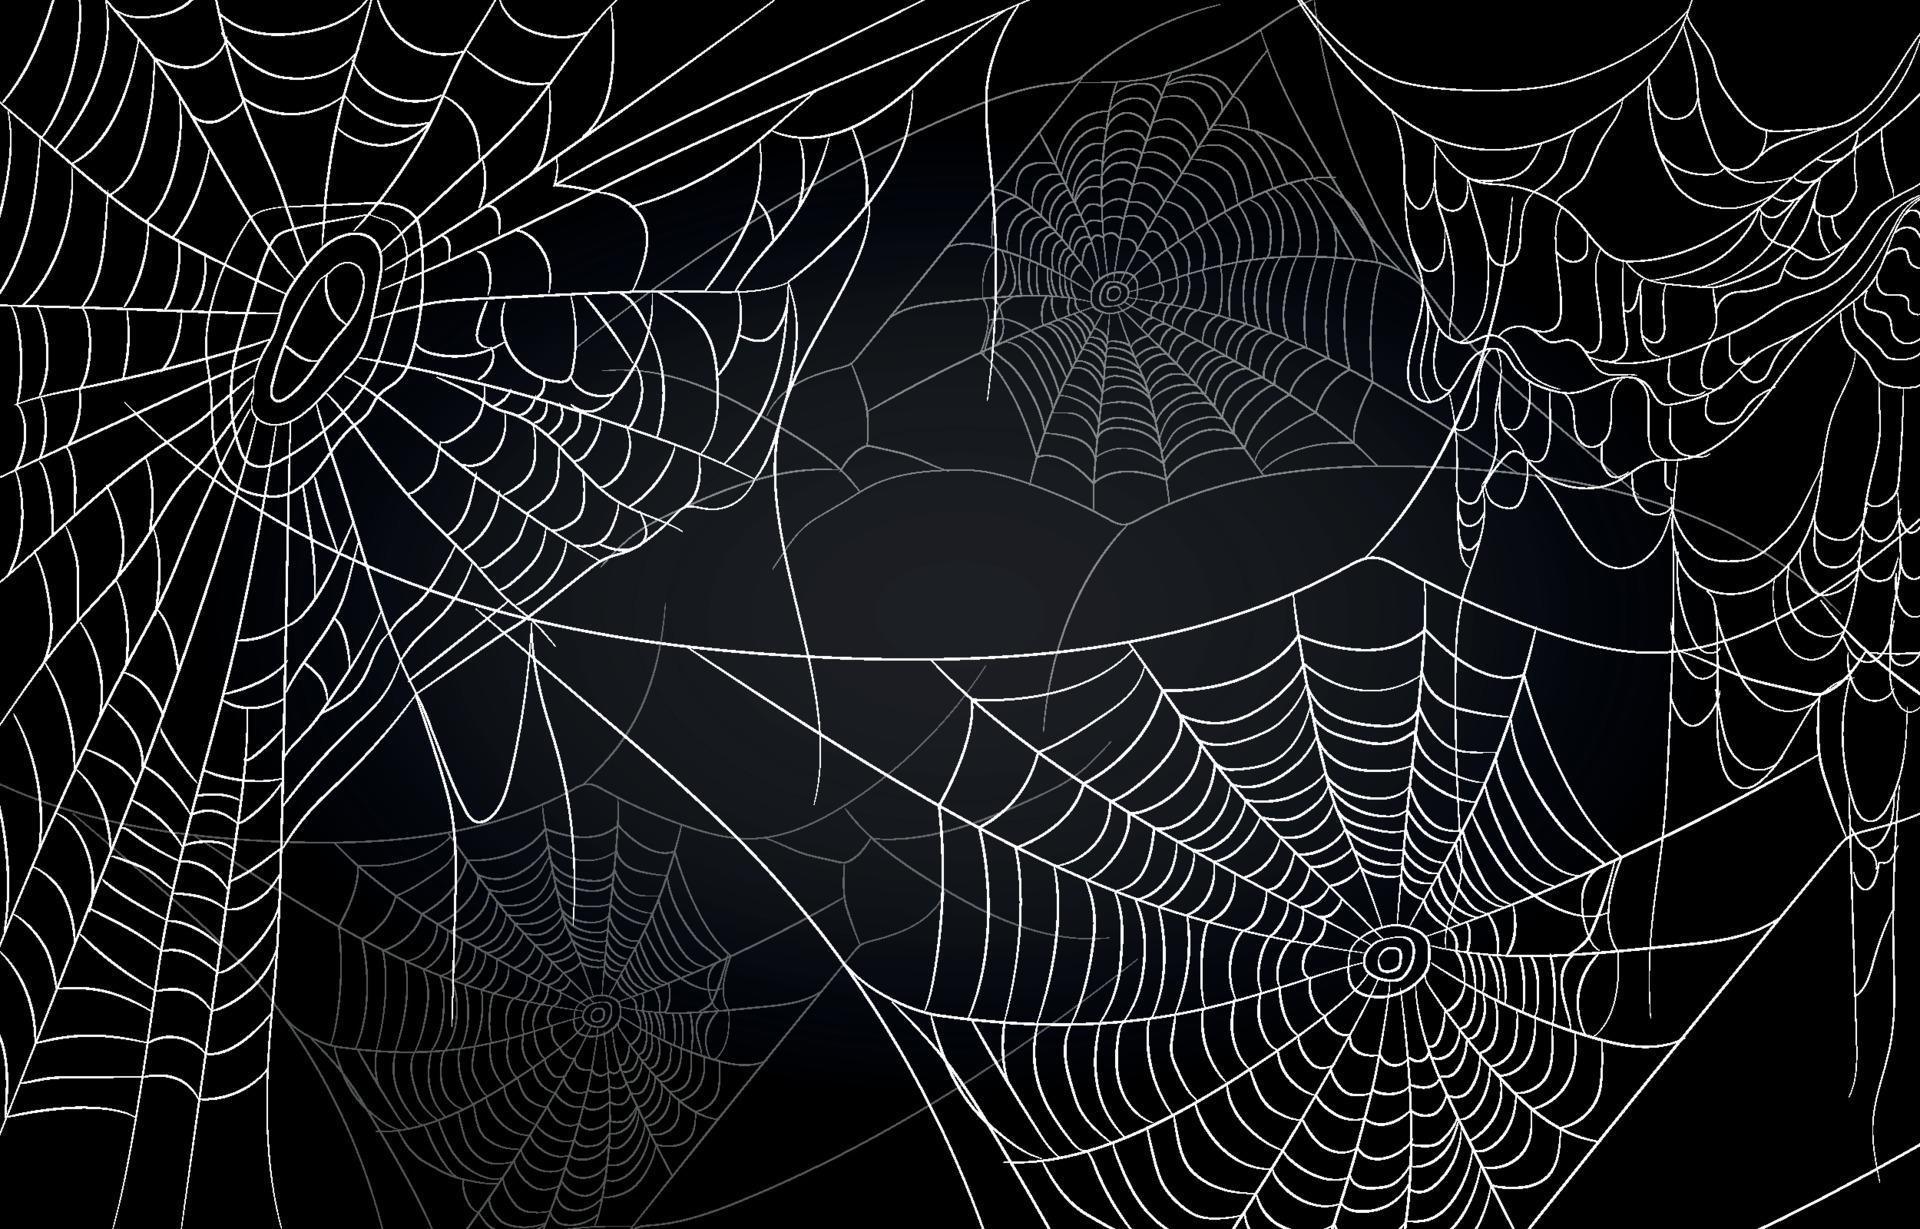 8. Halloween Nail Art Tutorial: 3D Rhinestone Spiderweb Design - wide 7